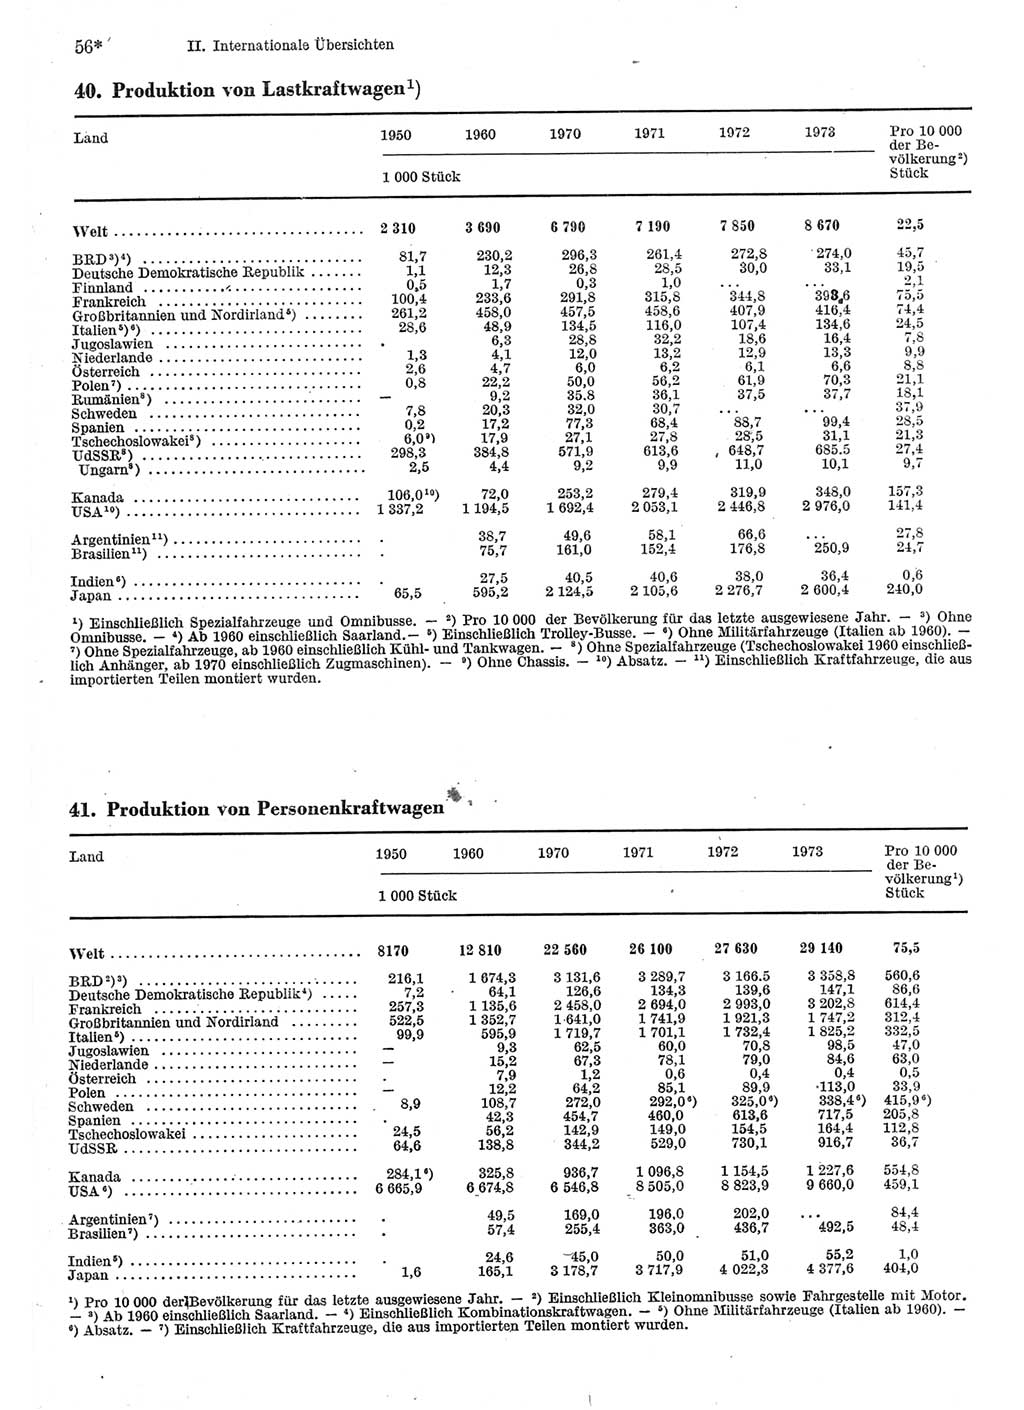 Statistisches Jahrbuch der Deutschen Demokratischen Republik (DDR) 1975, Seite 56 (Stat. Jb. DDR 1975, S. 56)